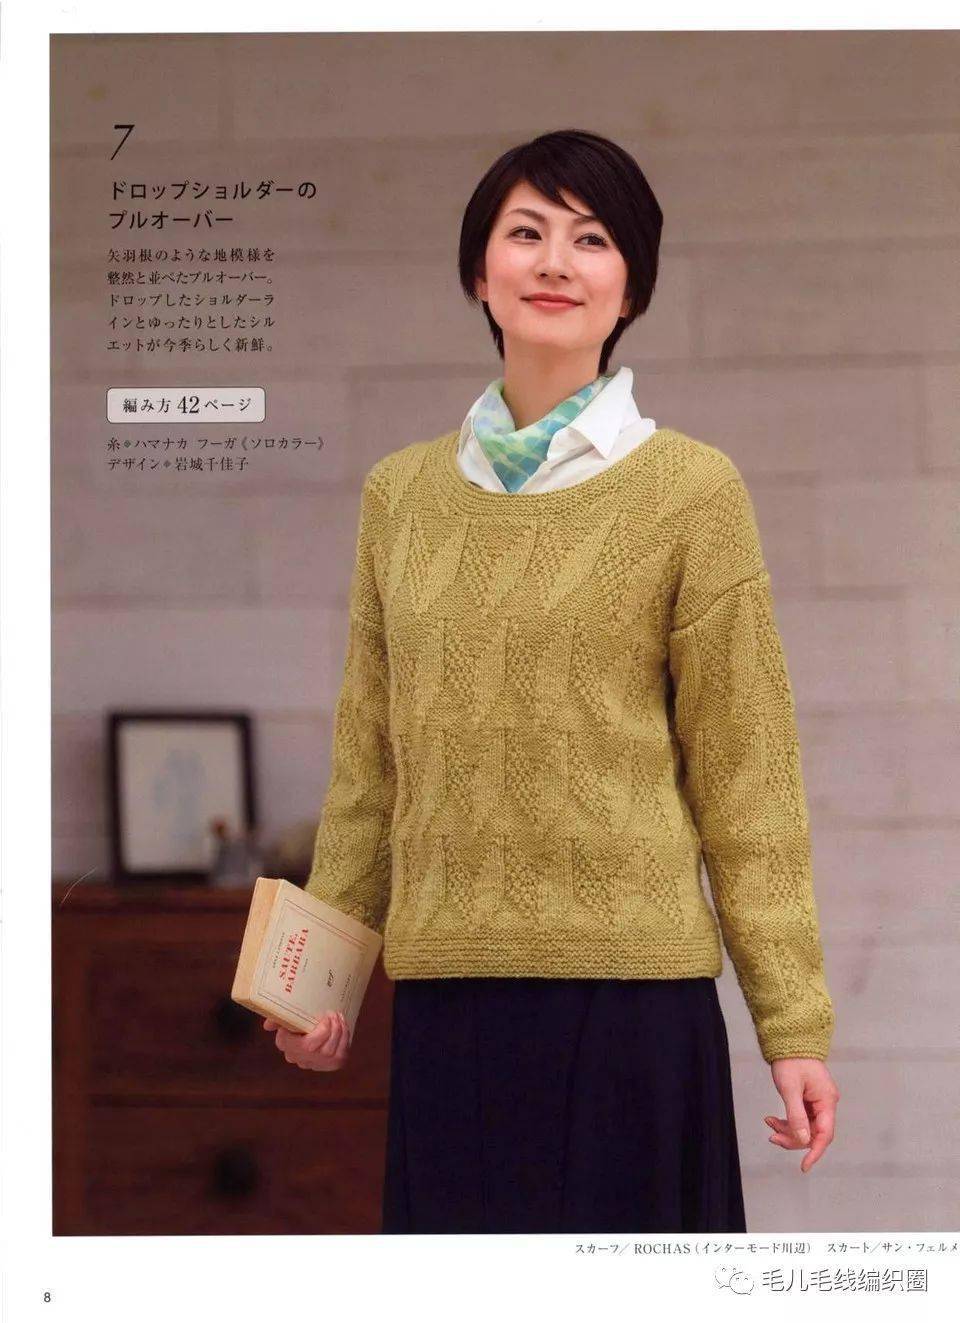 【图解】这么简单的毛衣居然也好看?